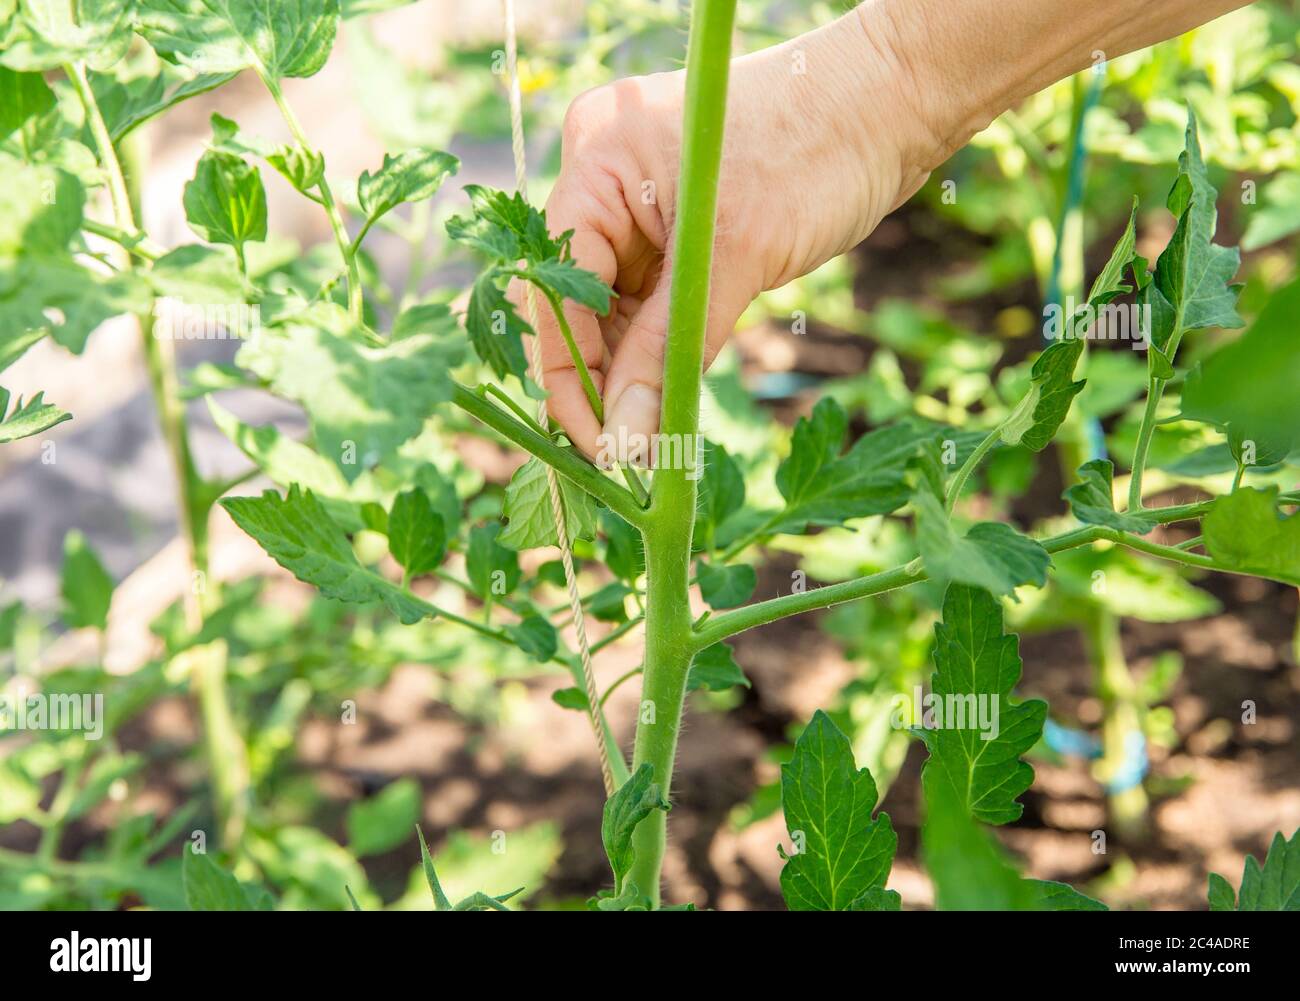 Nahaufnahme der Frau Hand kneifen übermäßige Shoot Sauger, die auf Tomatenpflanzen Stamm im Gewächshaus wachsen. Stockfoto